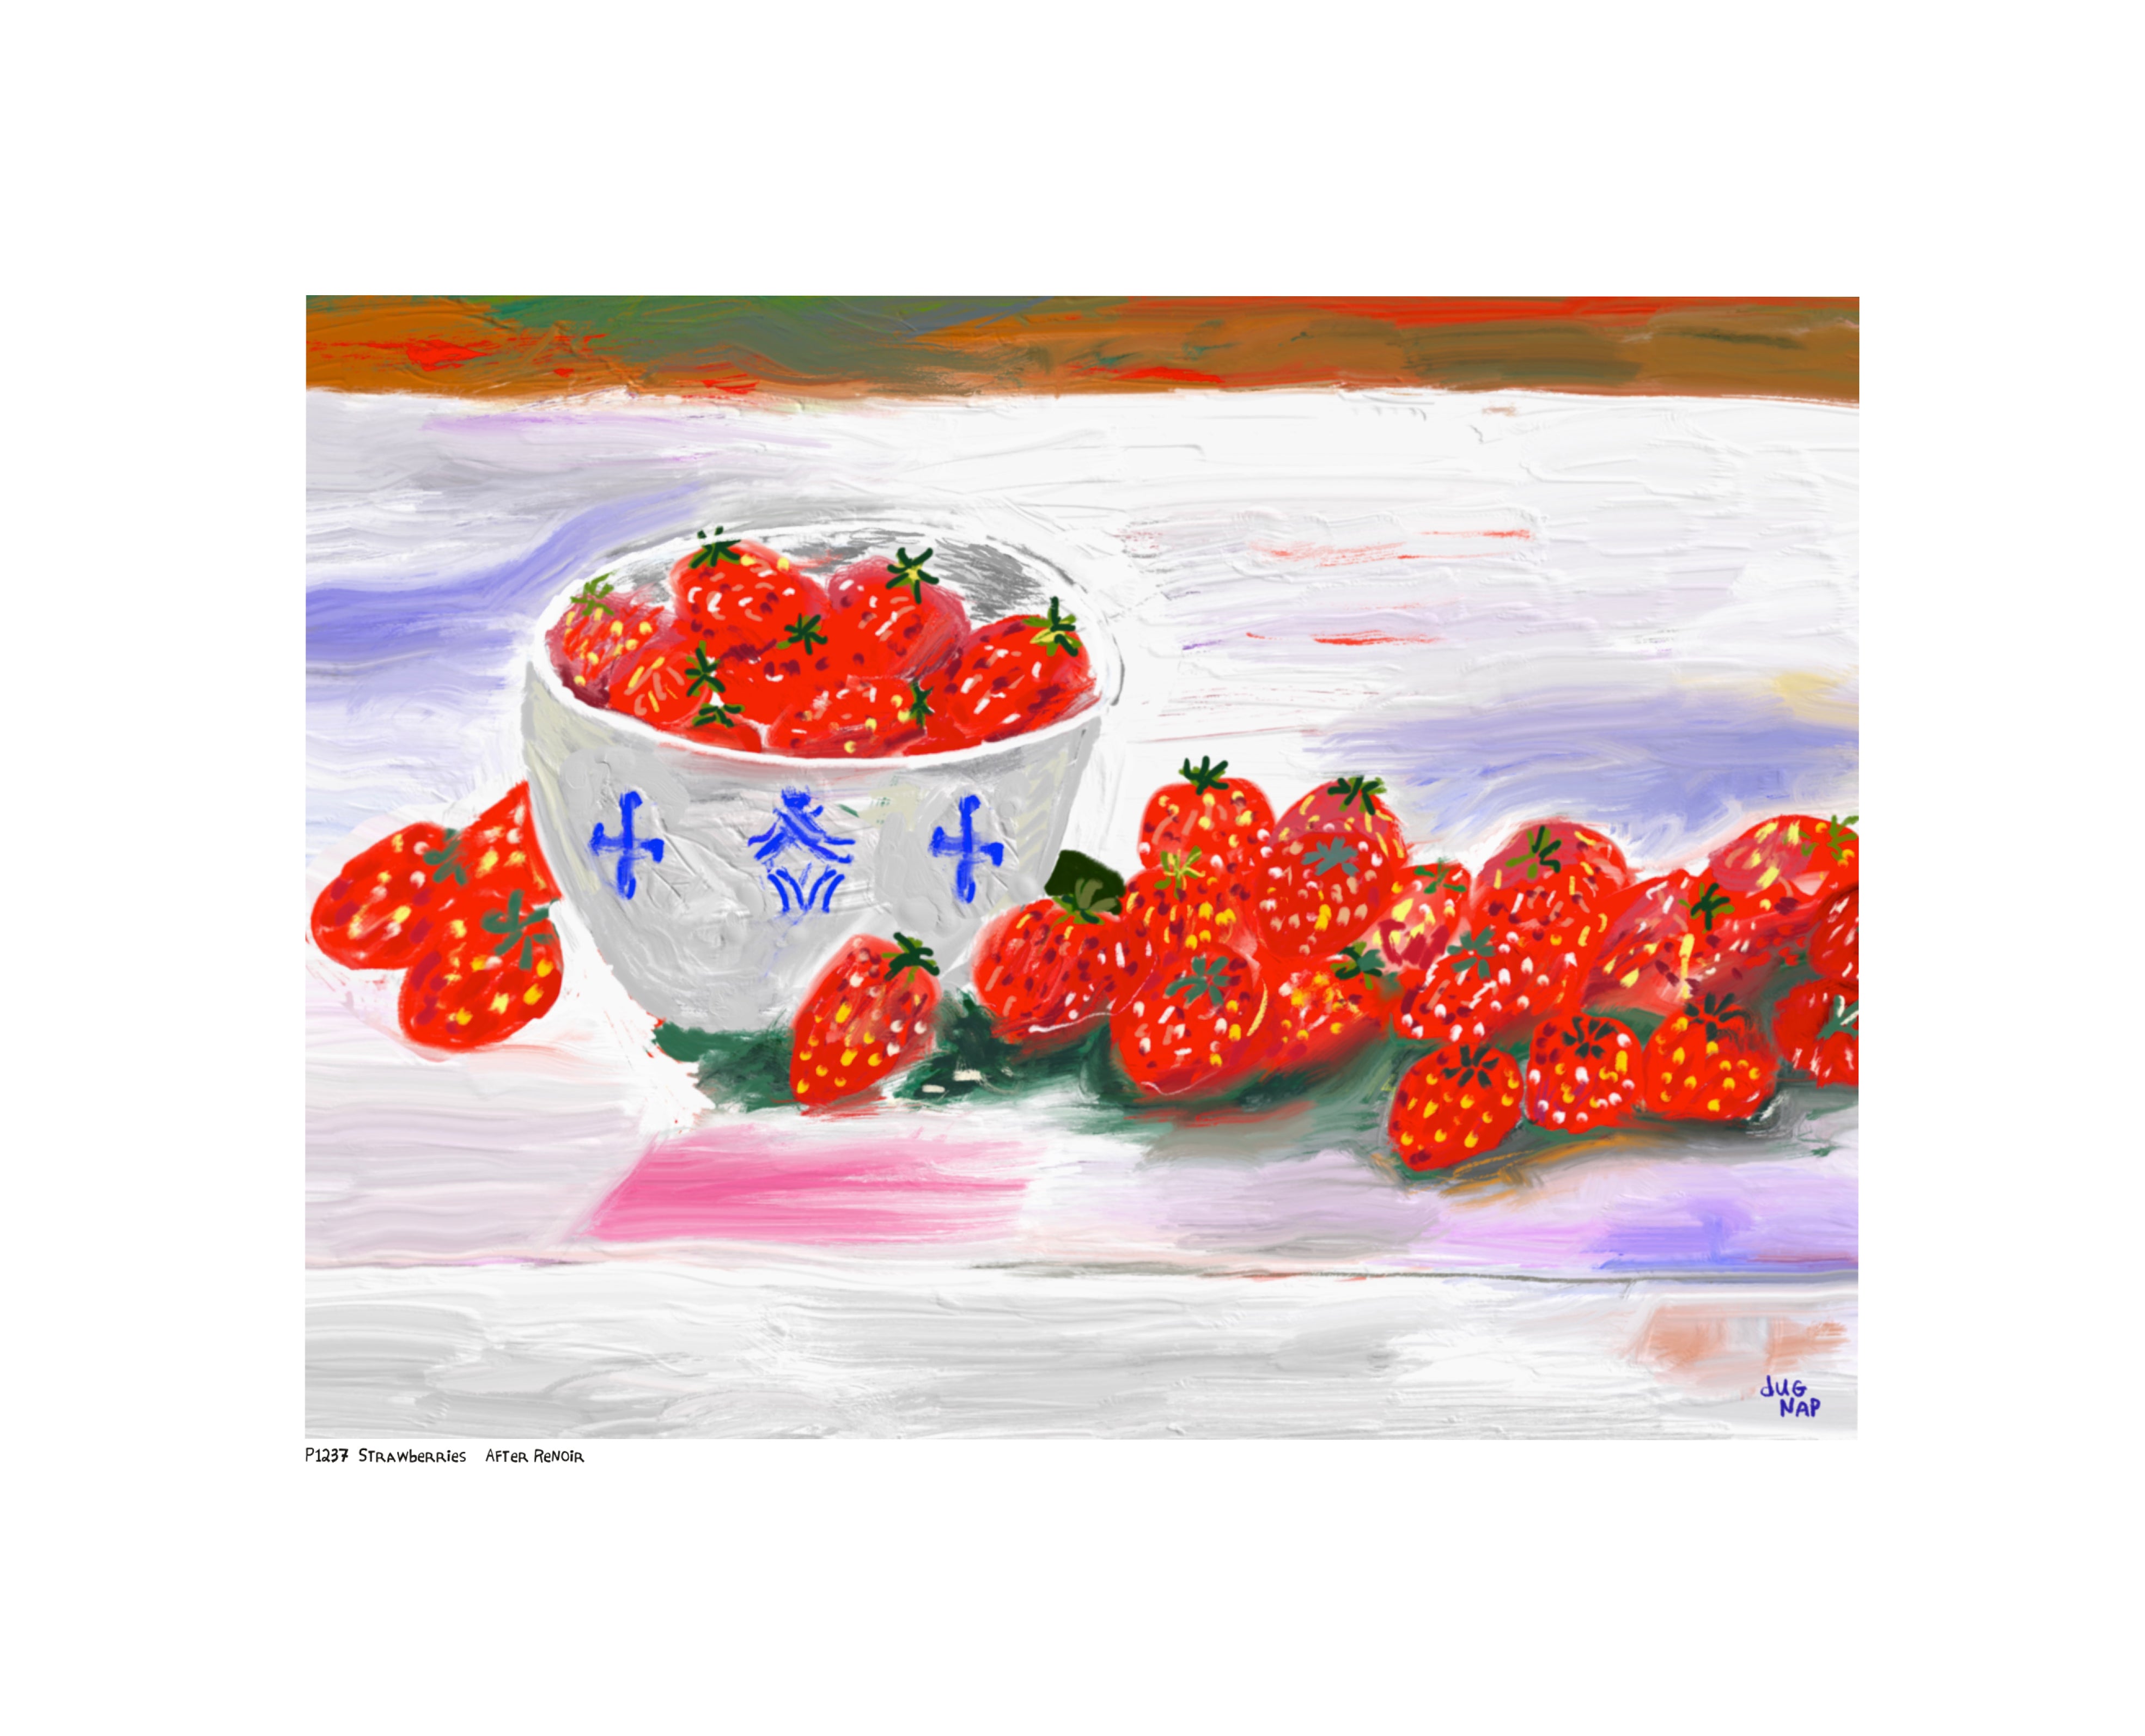 P1237 Strawberries